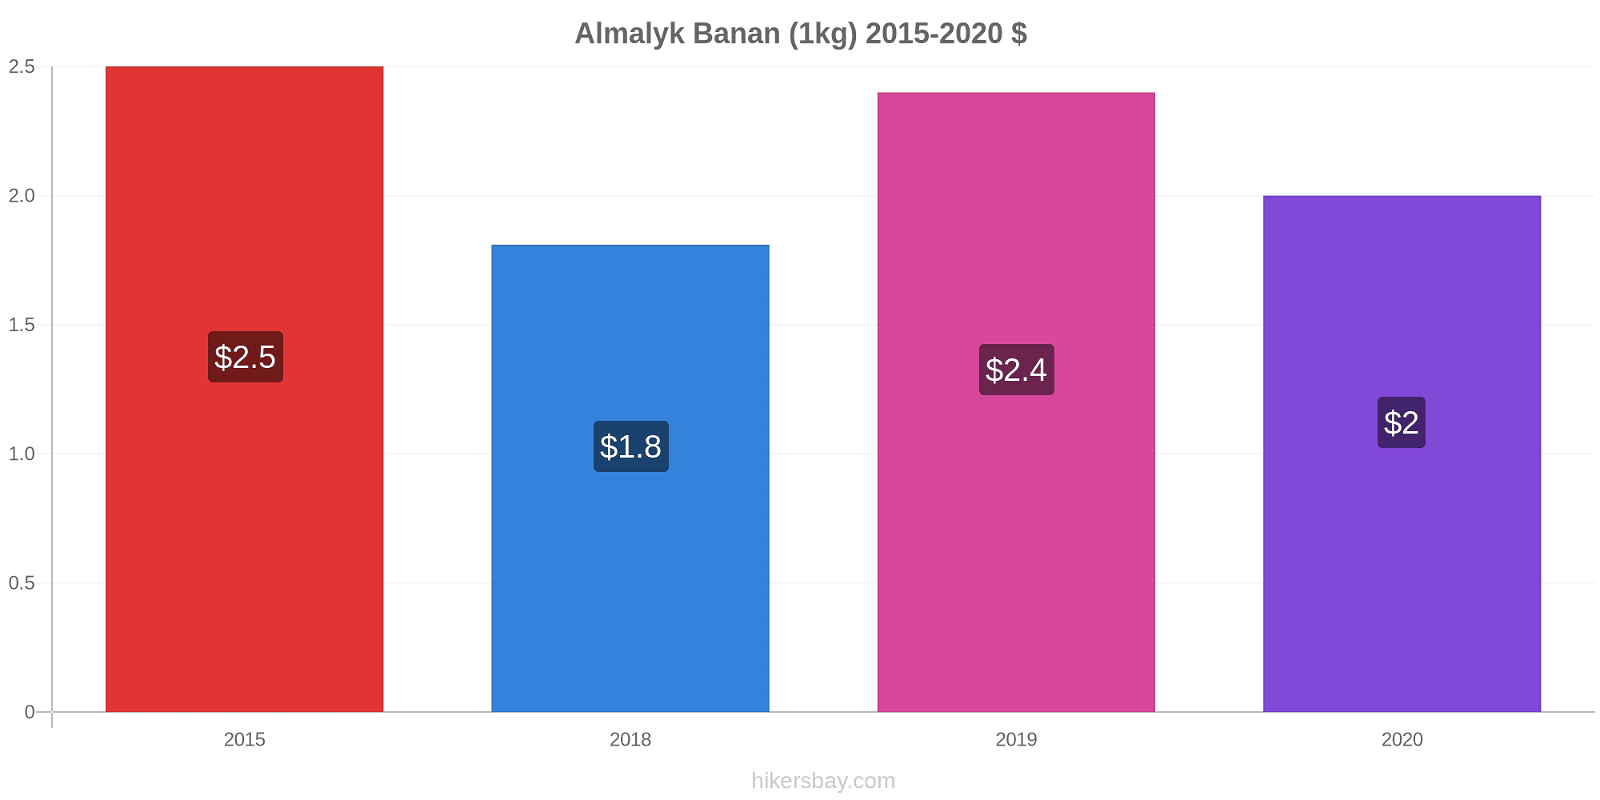 Almalyk prisförändringar Banan (1kg) hikersbay.com